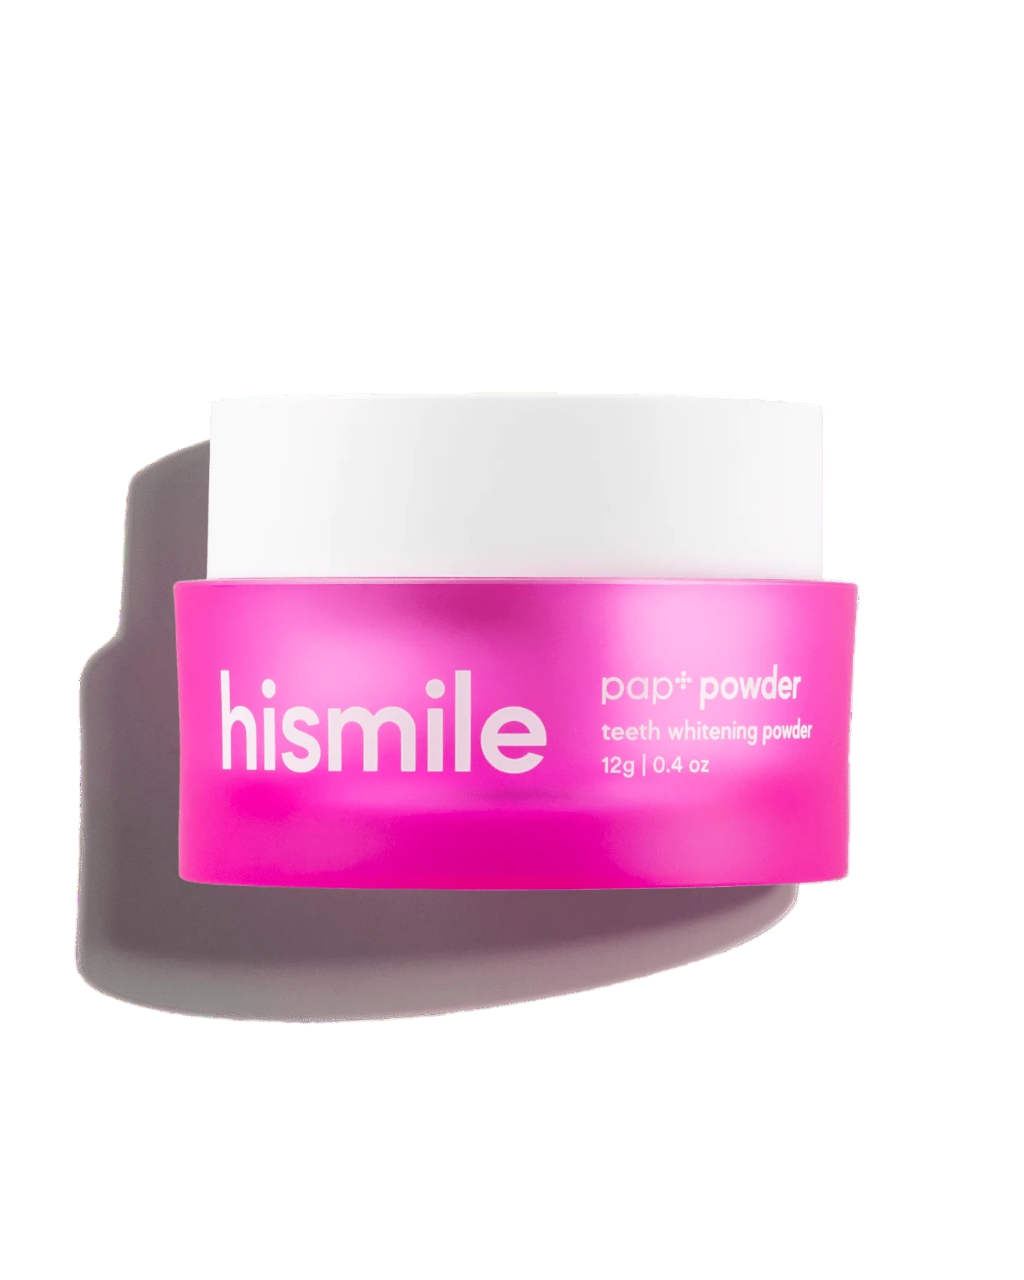 hismile PAP+ Whitening Powder